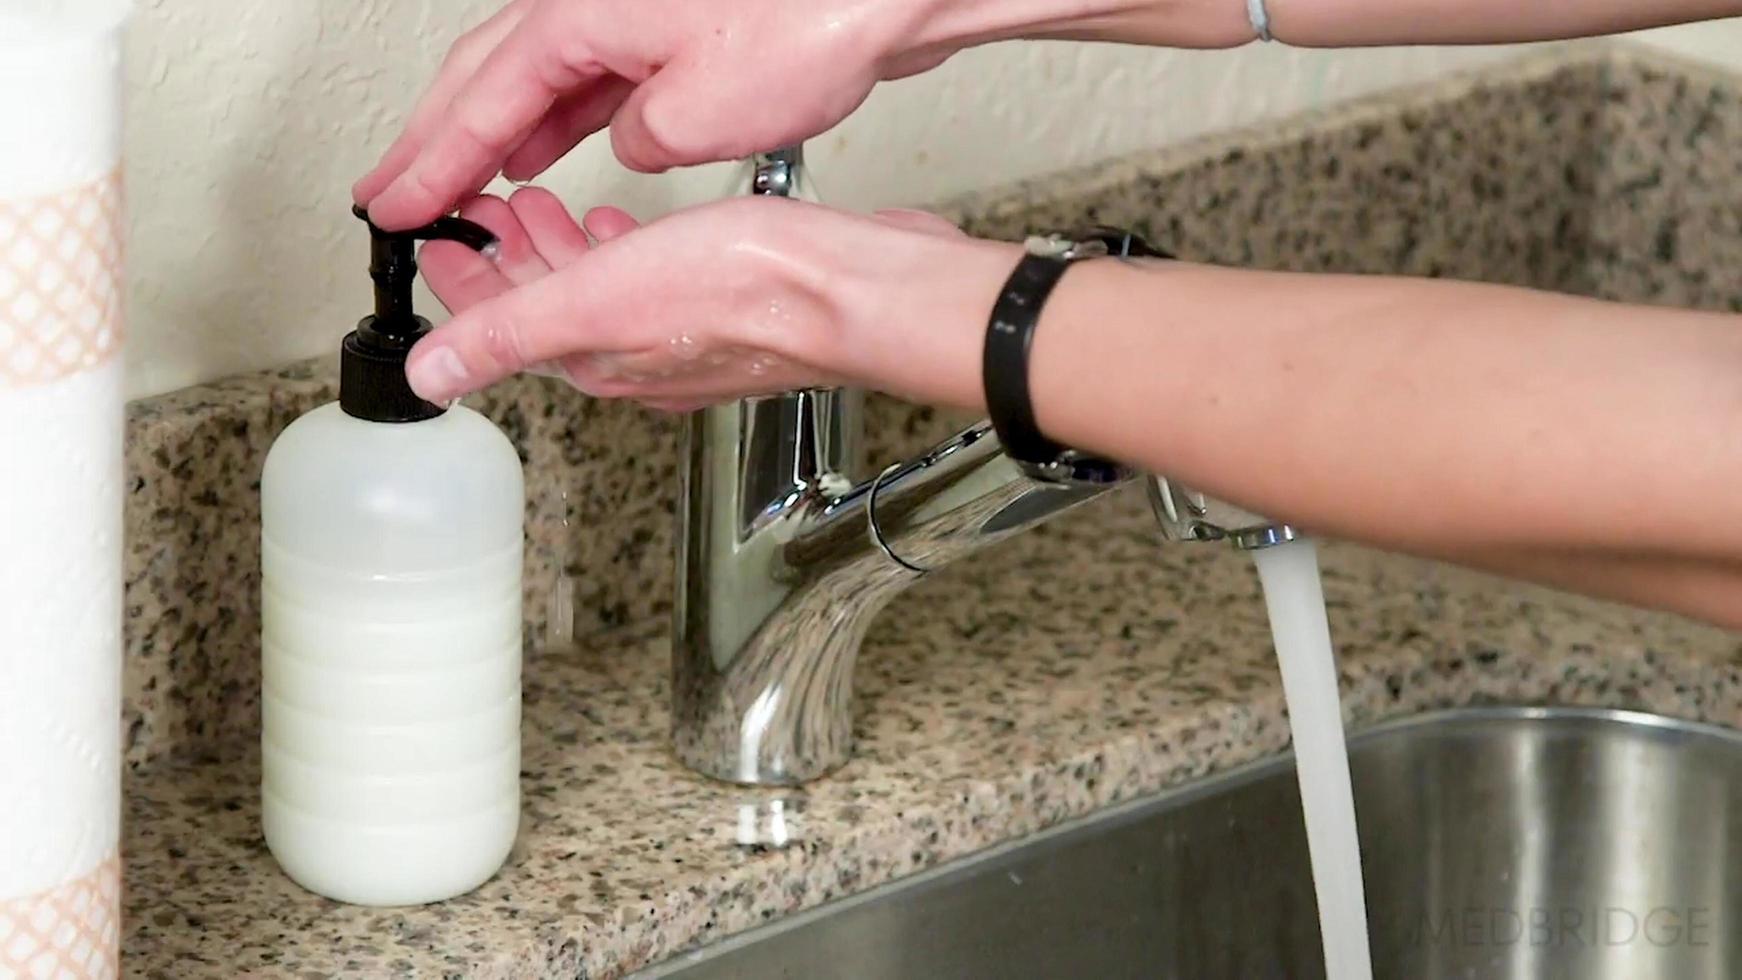 donna che prende il disinfettante per le mani per lavarsi le mani dal flacone del disinfettante foto